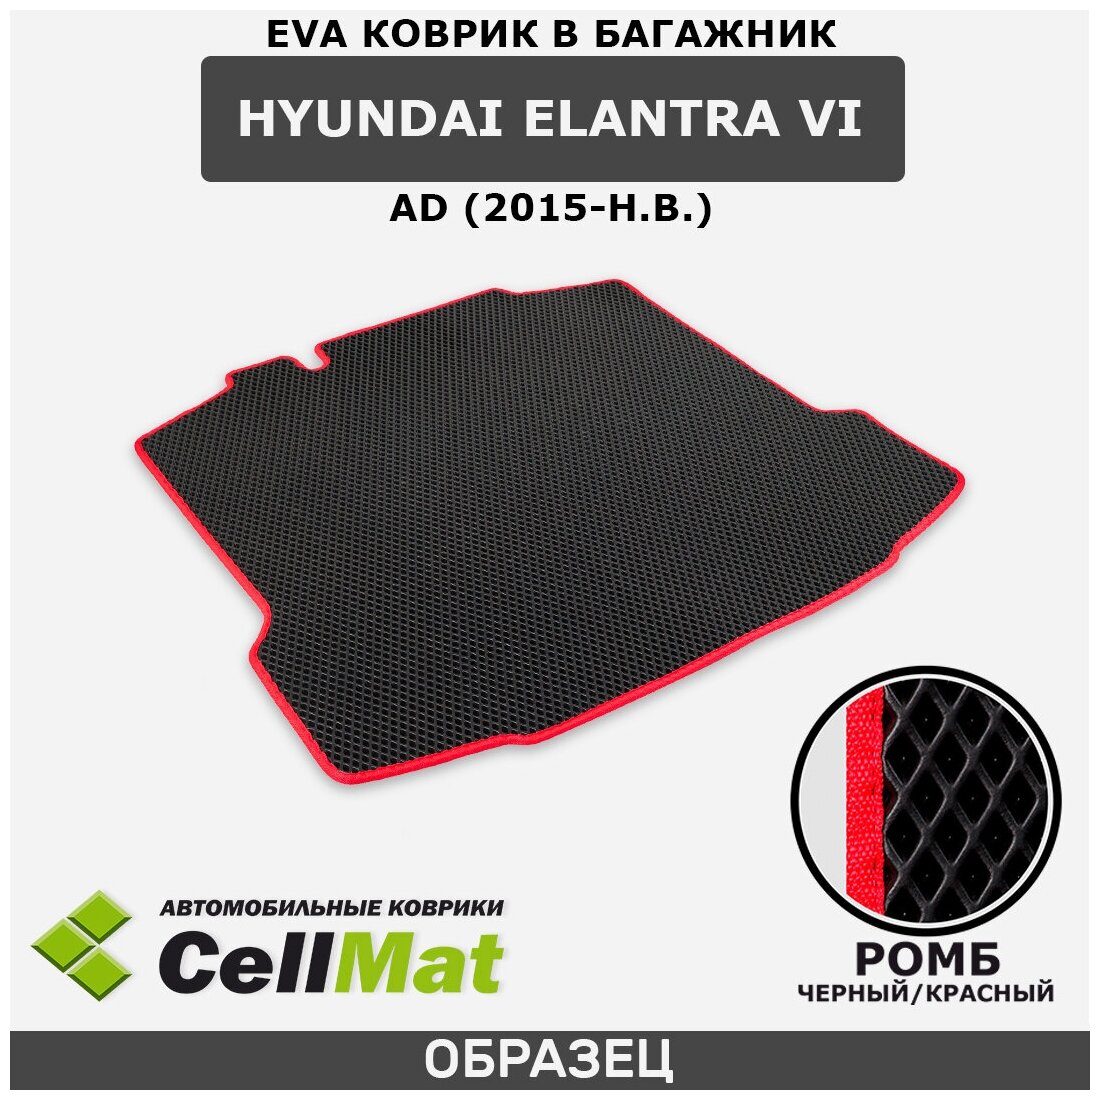 ЭВА ЕВА EVA коврик CellMat в багажник Hyundai Elantra VI AD, Хендай Элантра, 6-ое поколение, 2015-н. в.